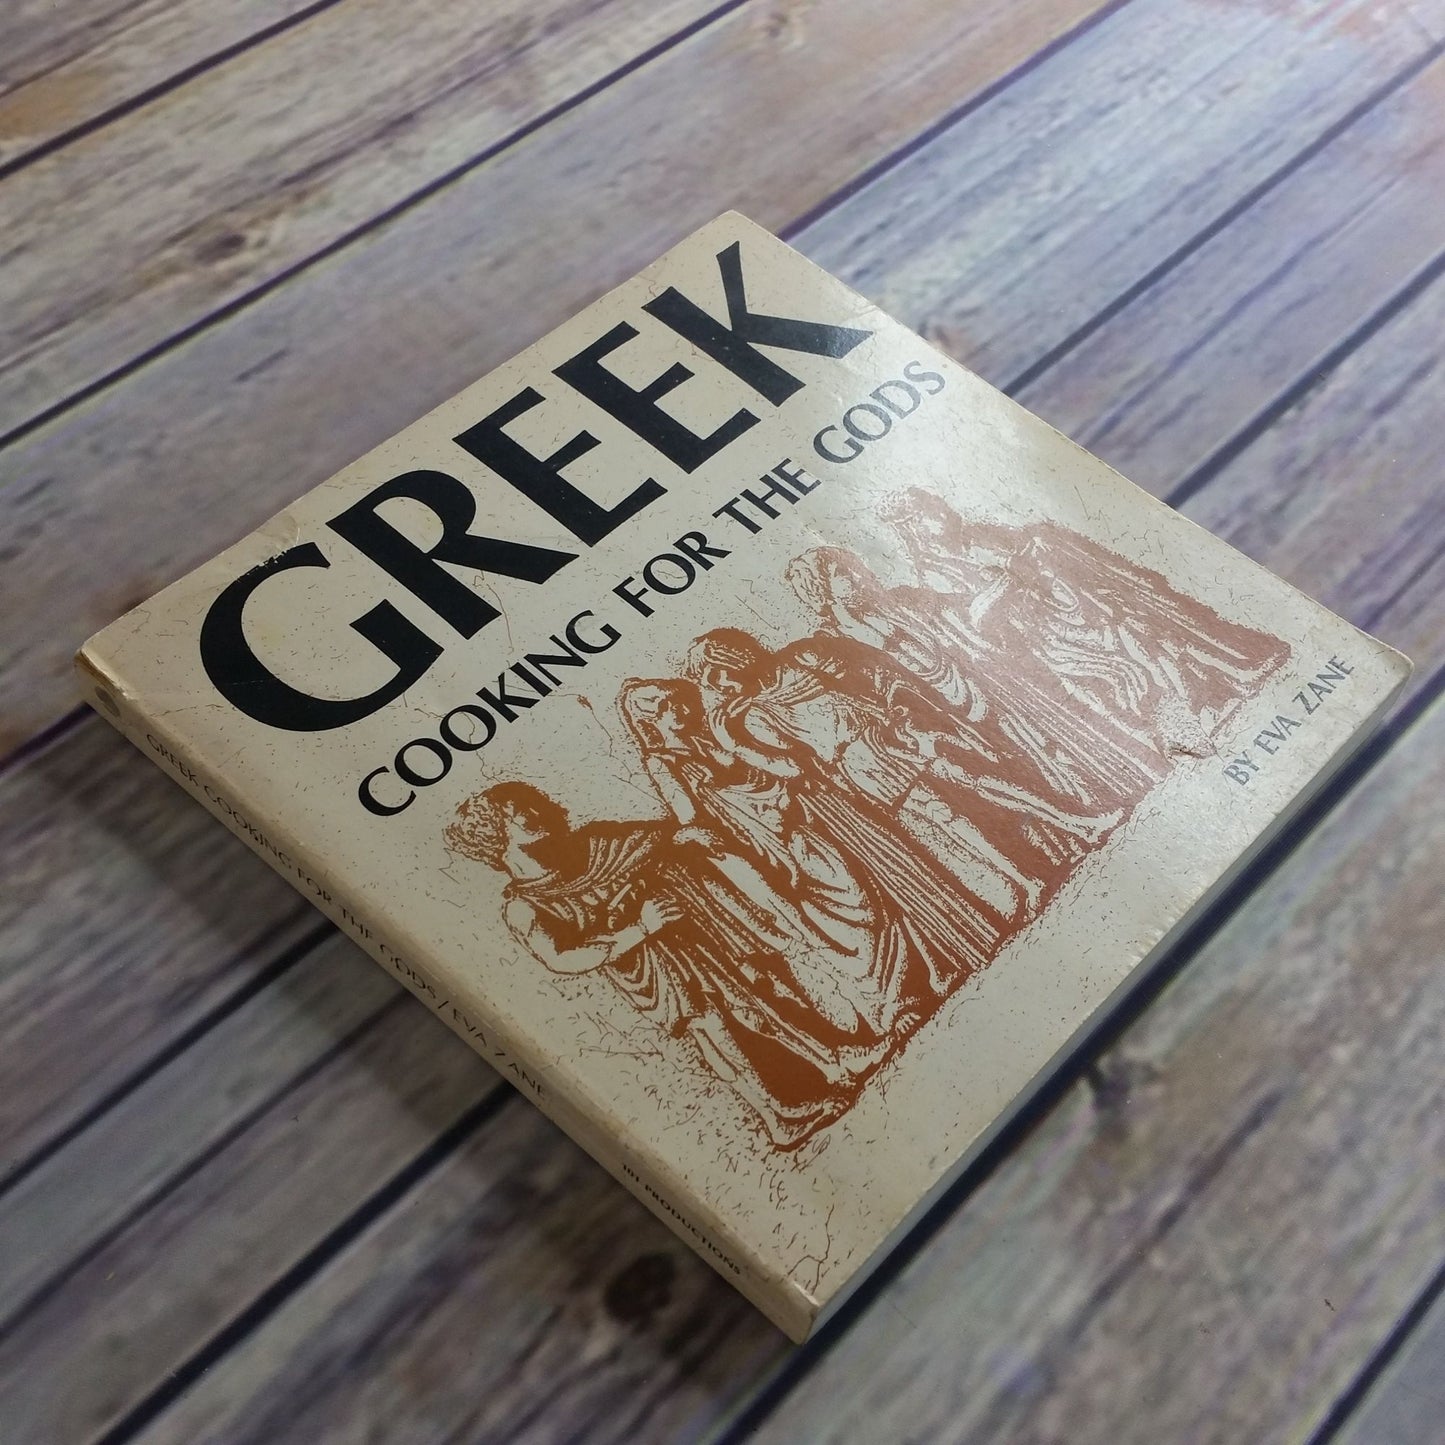 Vintage Cookbook Greek Cooking For the Gods Recipes Paperback 1975 Greek Food Eva Zane